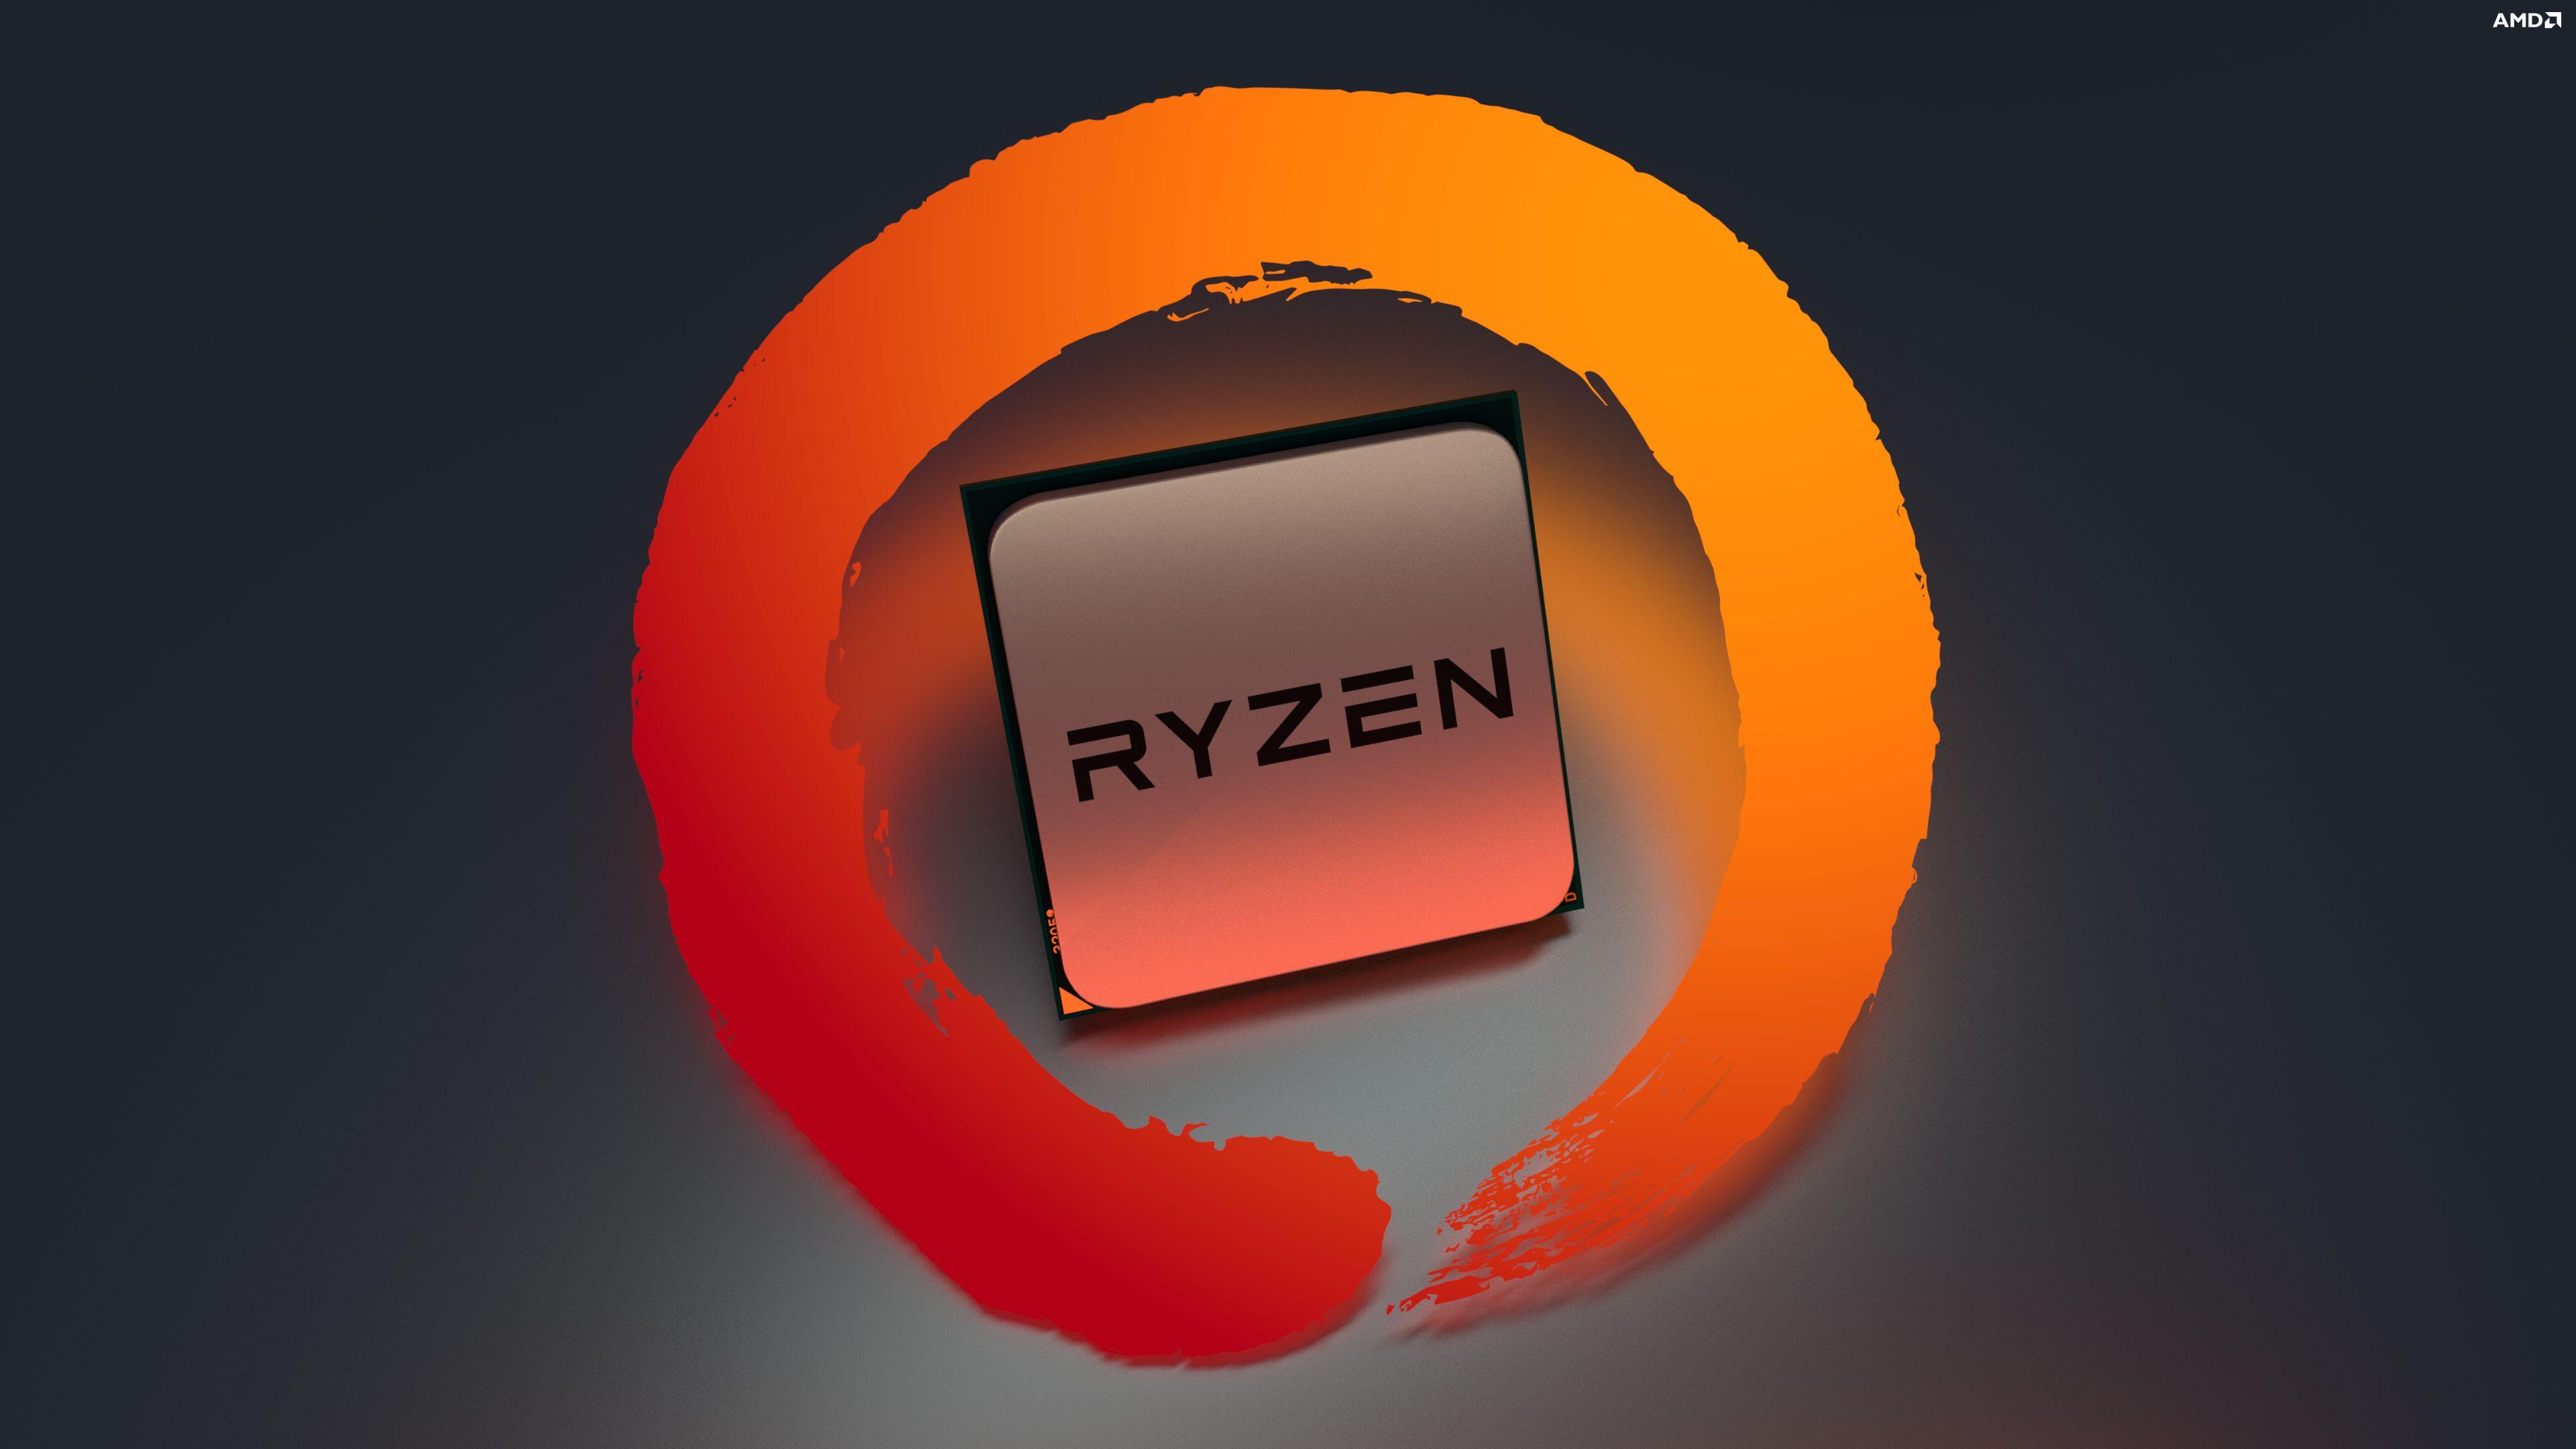 AMD Ryzen 4K Logo - 4K Ryzen Wallpaper (Rendered by me) : Amd